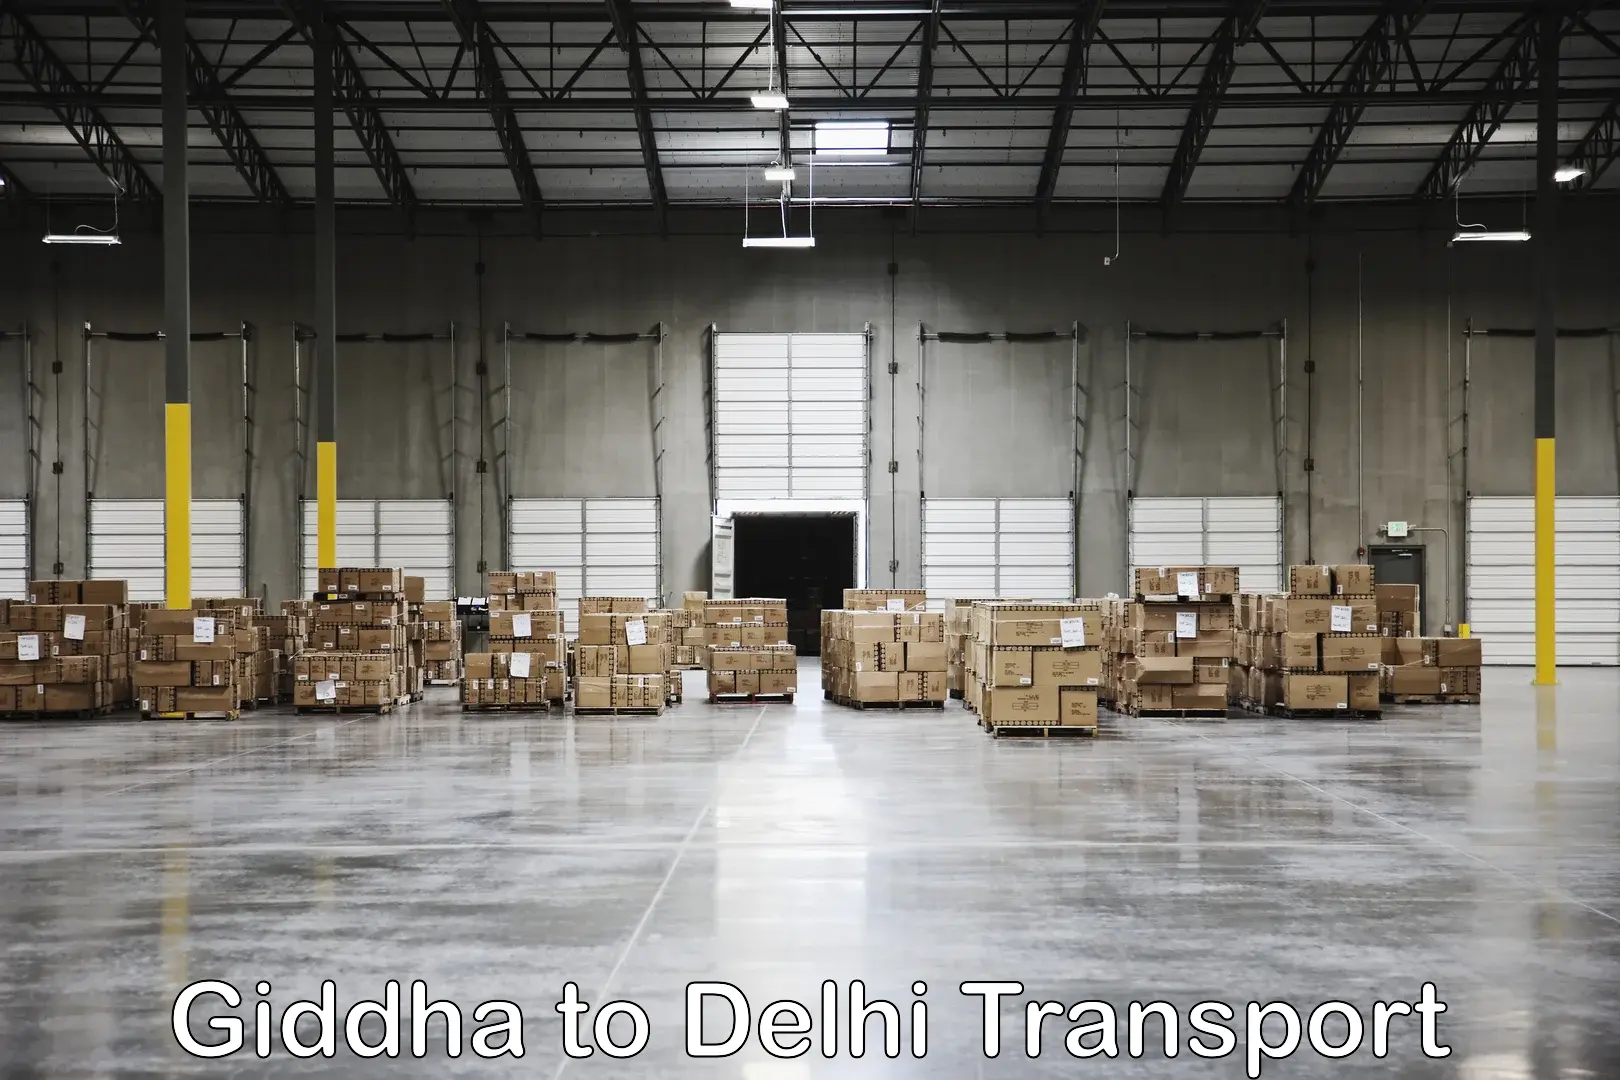 Land transport services Giddha to Subhash Nagar